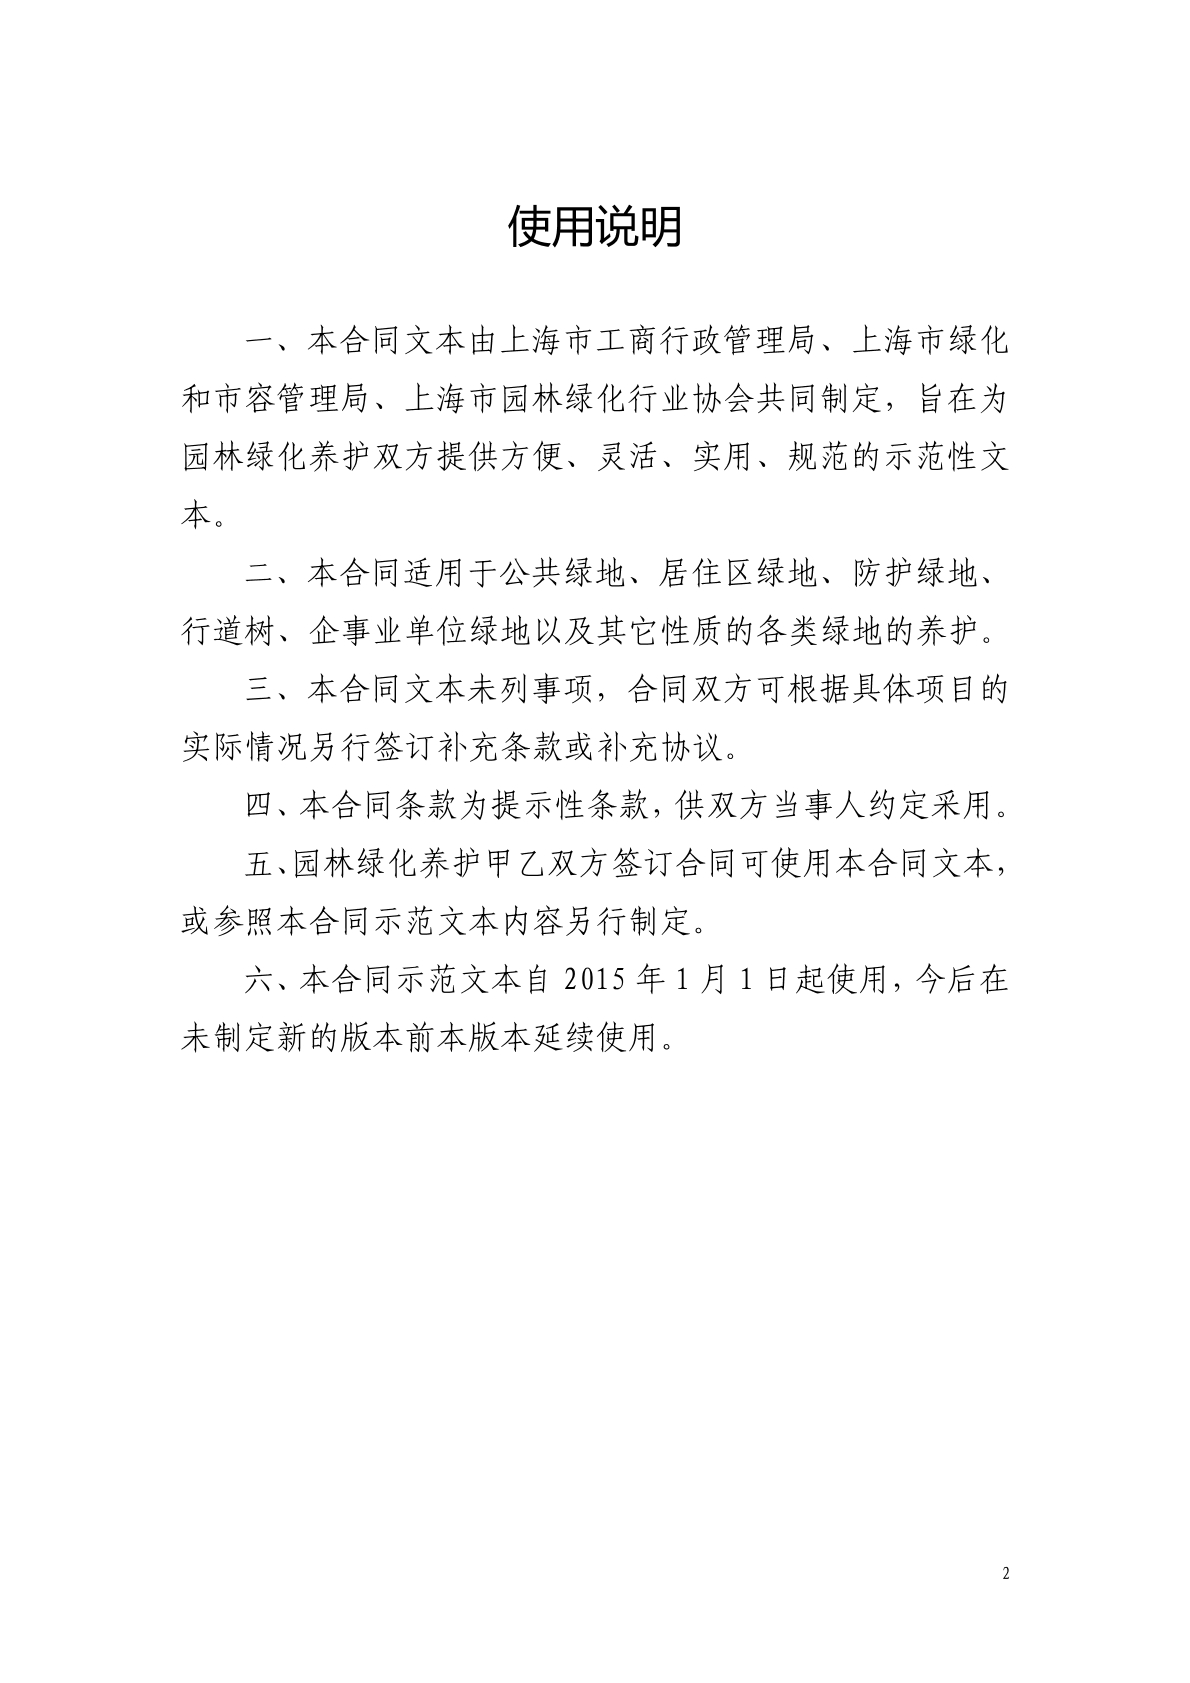 上海市园林绿化养护合同2014